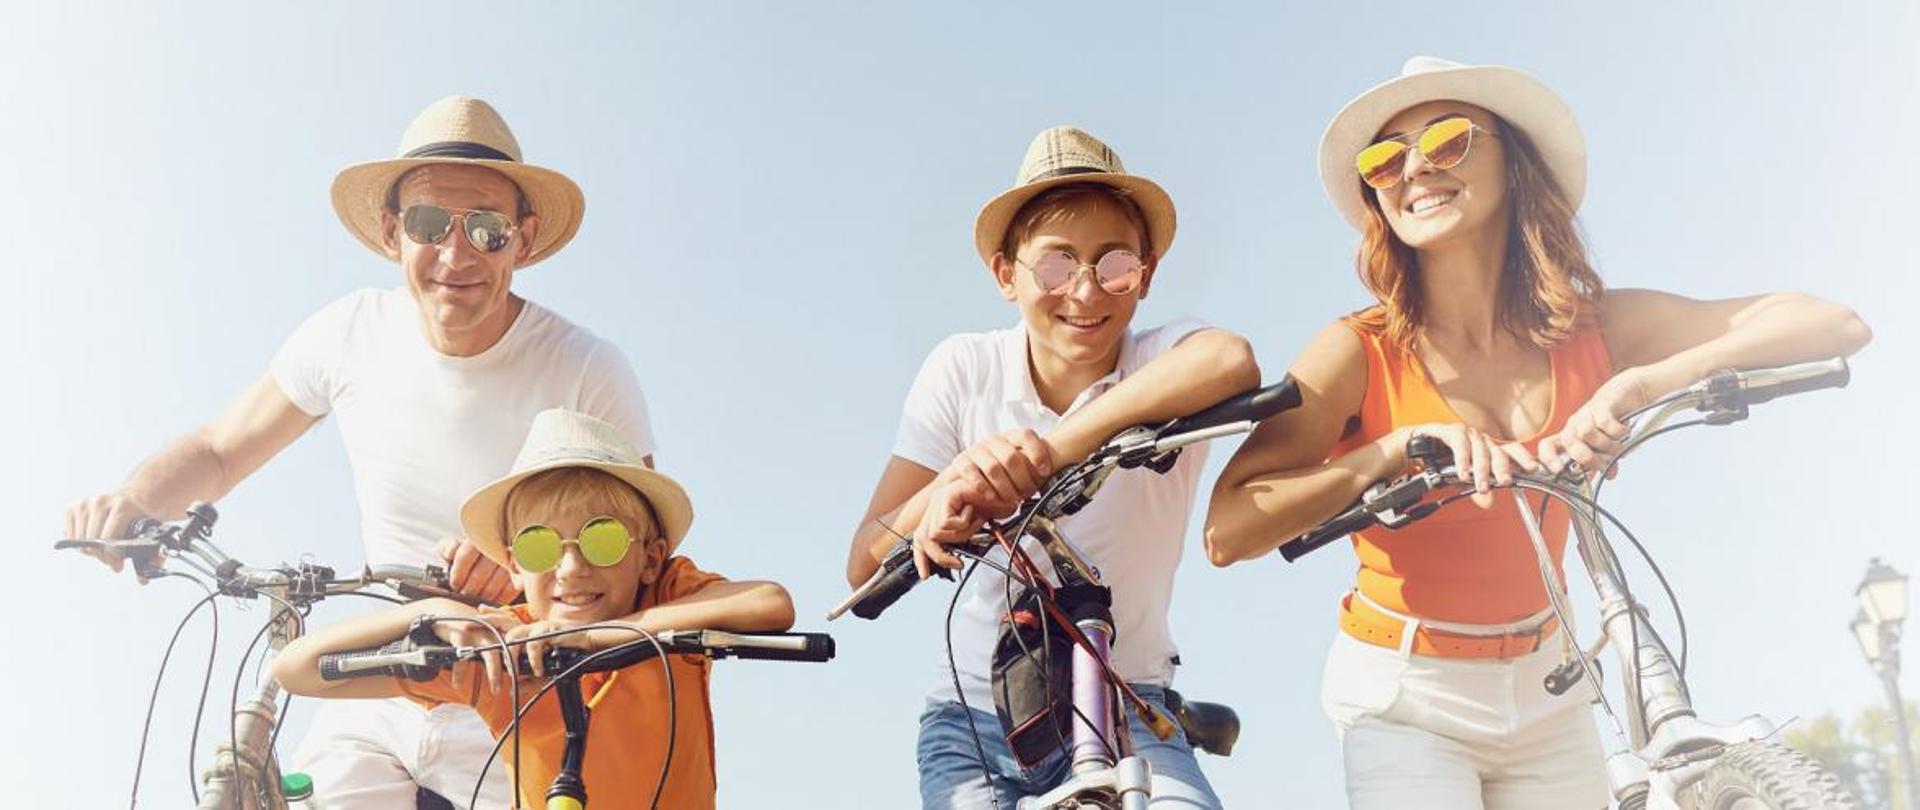 Na fotografii widoczna jest czteroosobowa rodzina. Wszyscy pozują do zdjęcia siedząc na rowerach. Każdy jest uśmiechnięty, ubrany w jasny kapelusz i przeciwsłoneczne okulary.